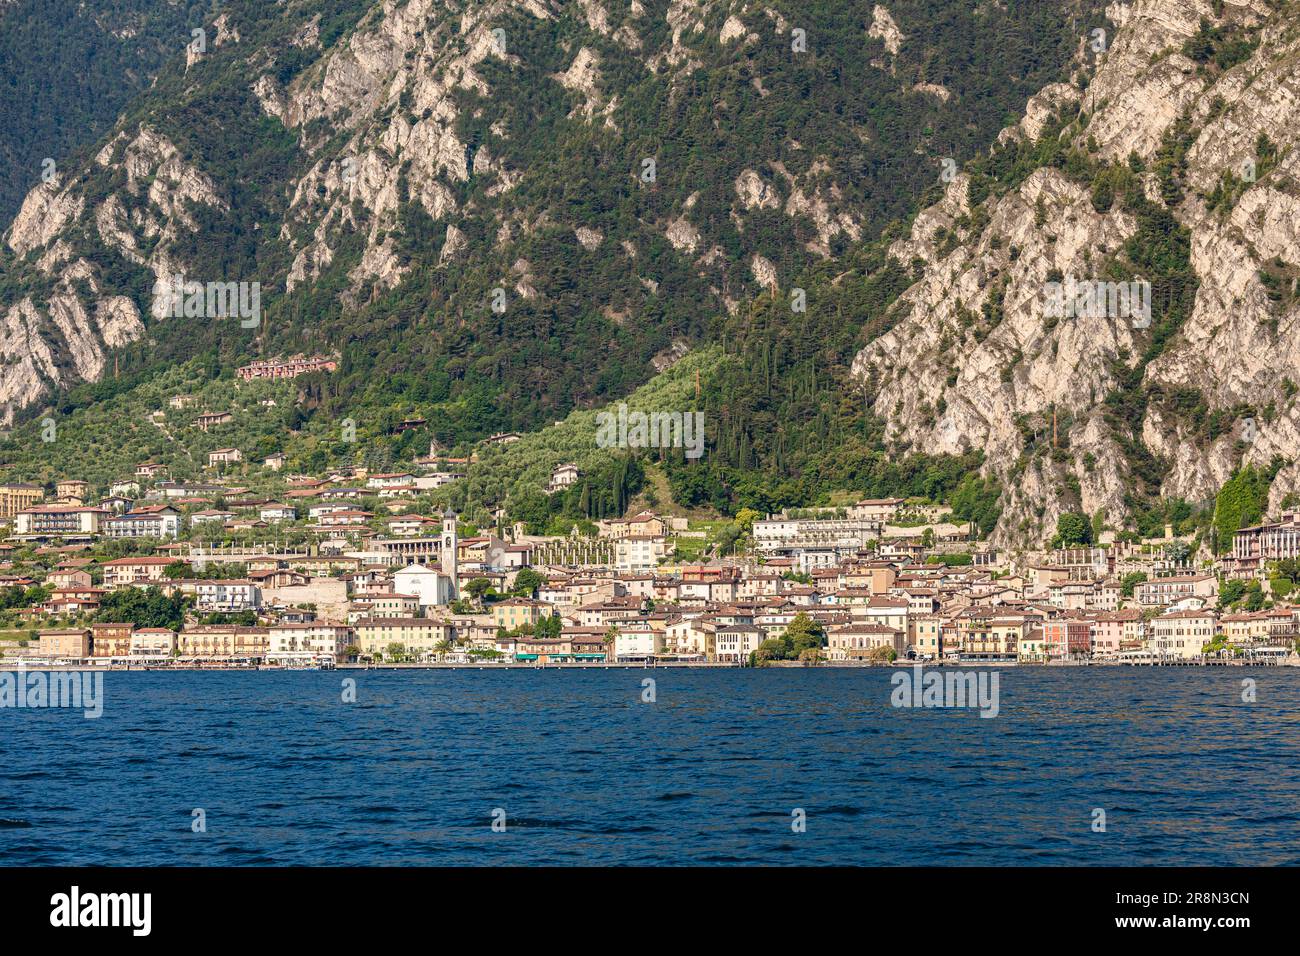 Vista sul paese di Limone sul Garda sul Lago di Garda, Lombardia, Italia Foto Stock